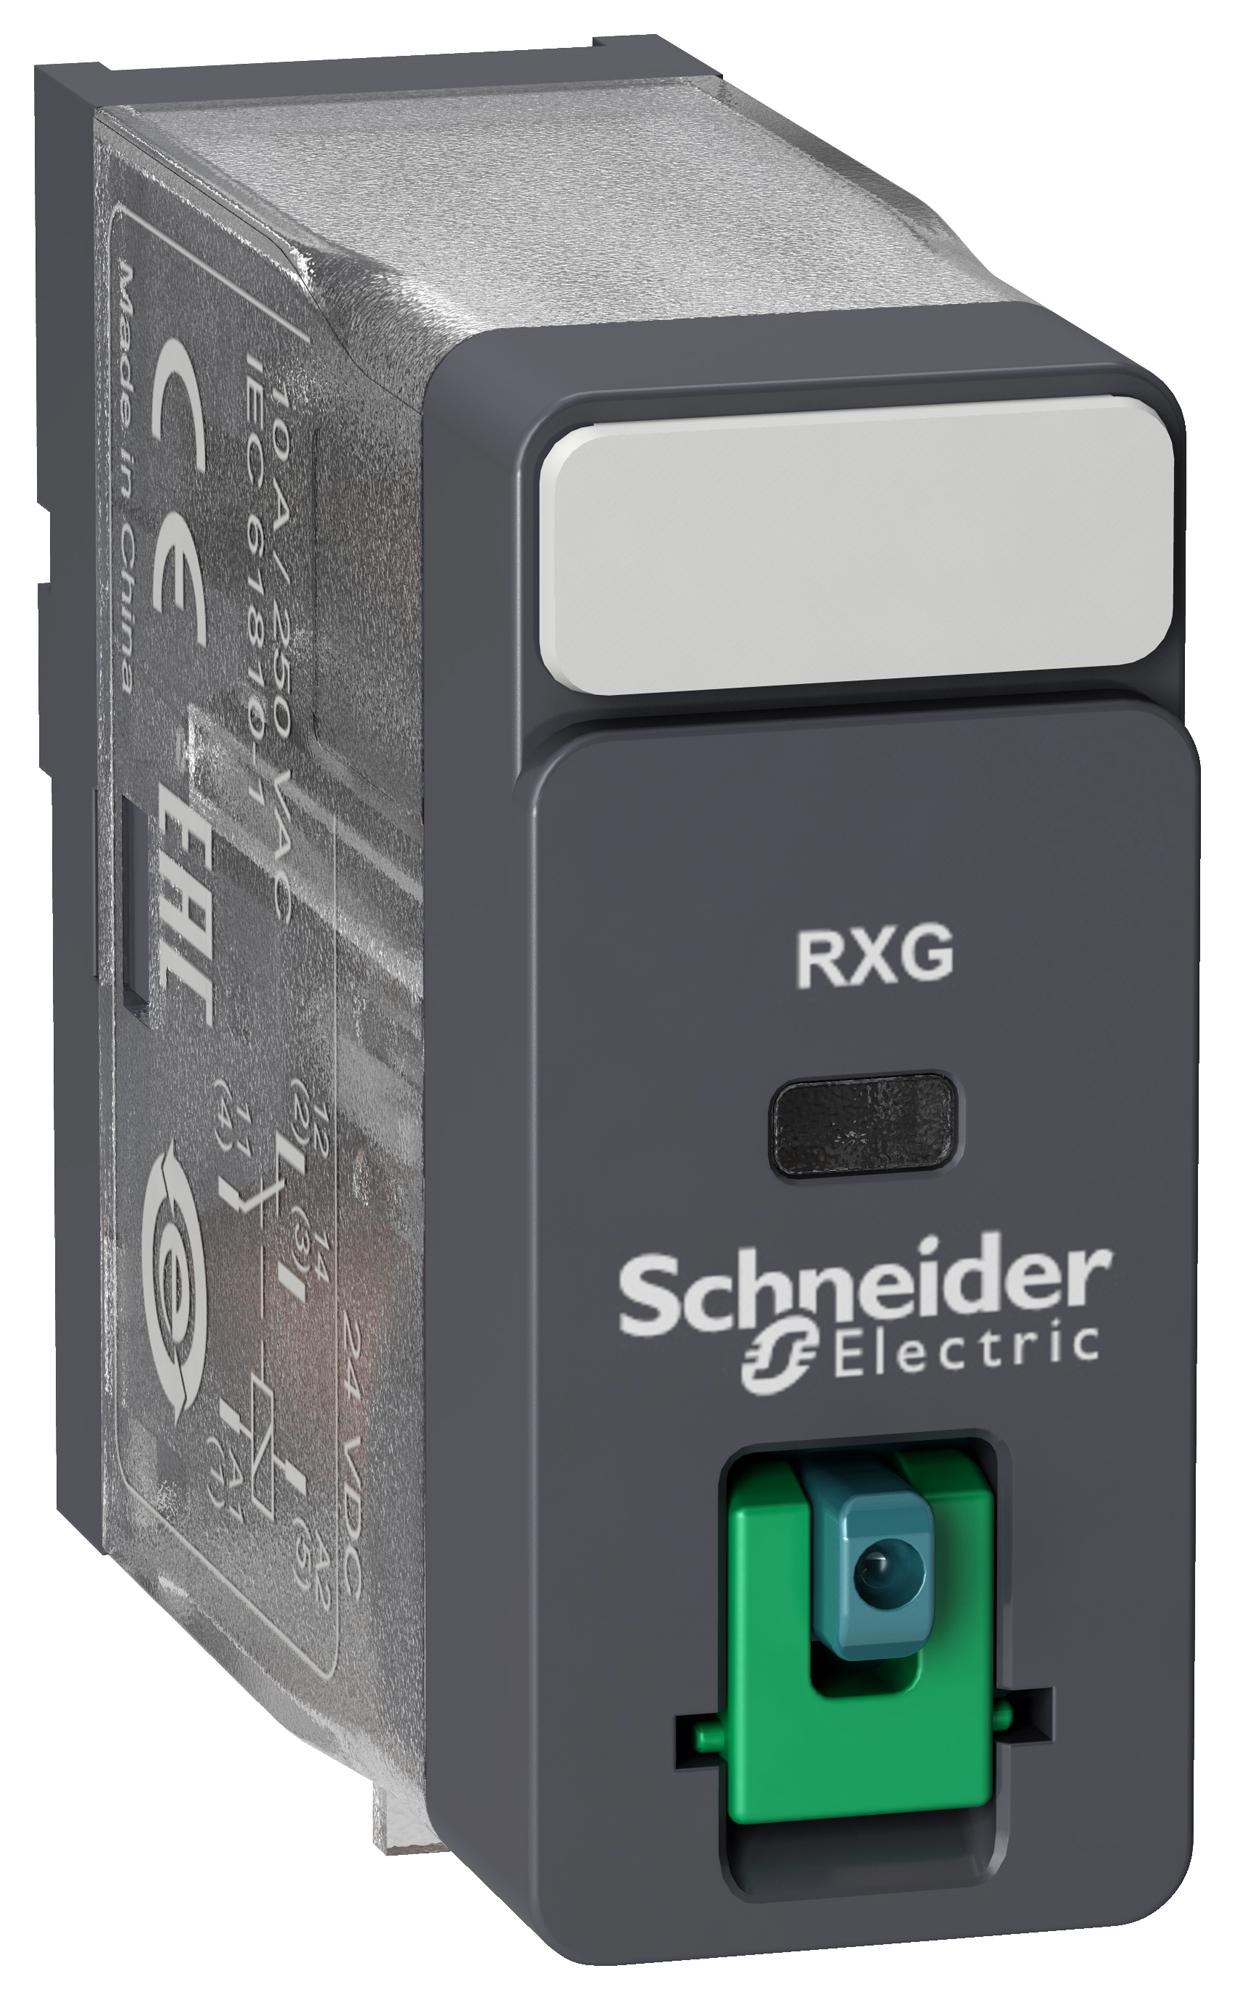 RXG11JD POWER RELAY, SPDT, 10A, 250VAC SCHNEIDER ELECTRIC